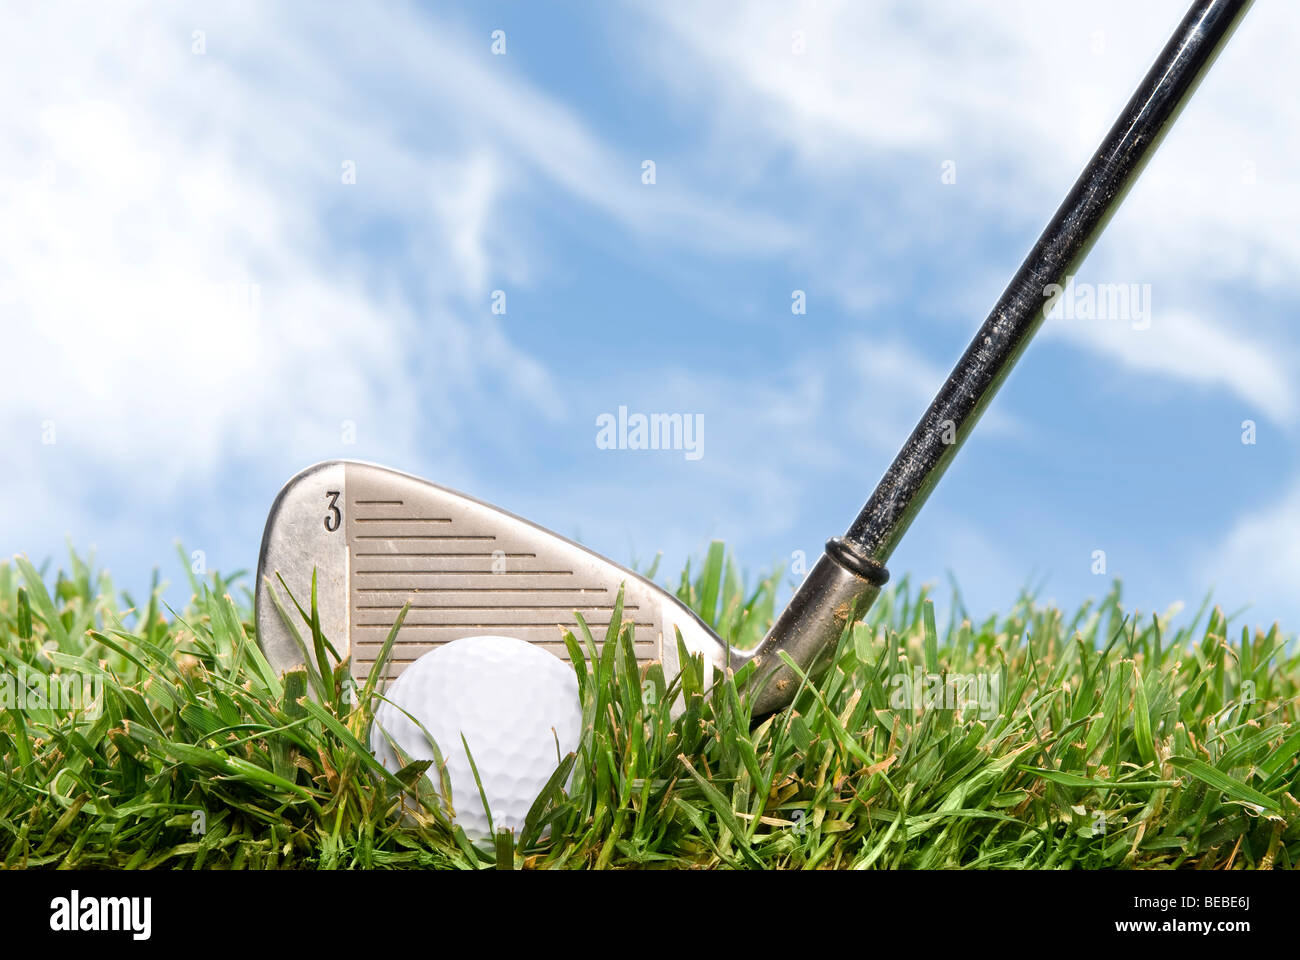 Un golder se prepara para golpear una pelota de golf fuera del áspero durante un hermoso día soleado. Foto de stock